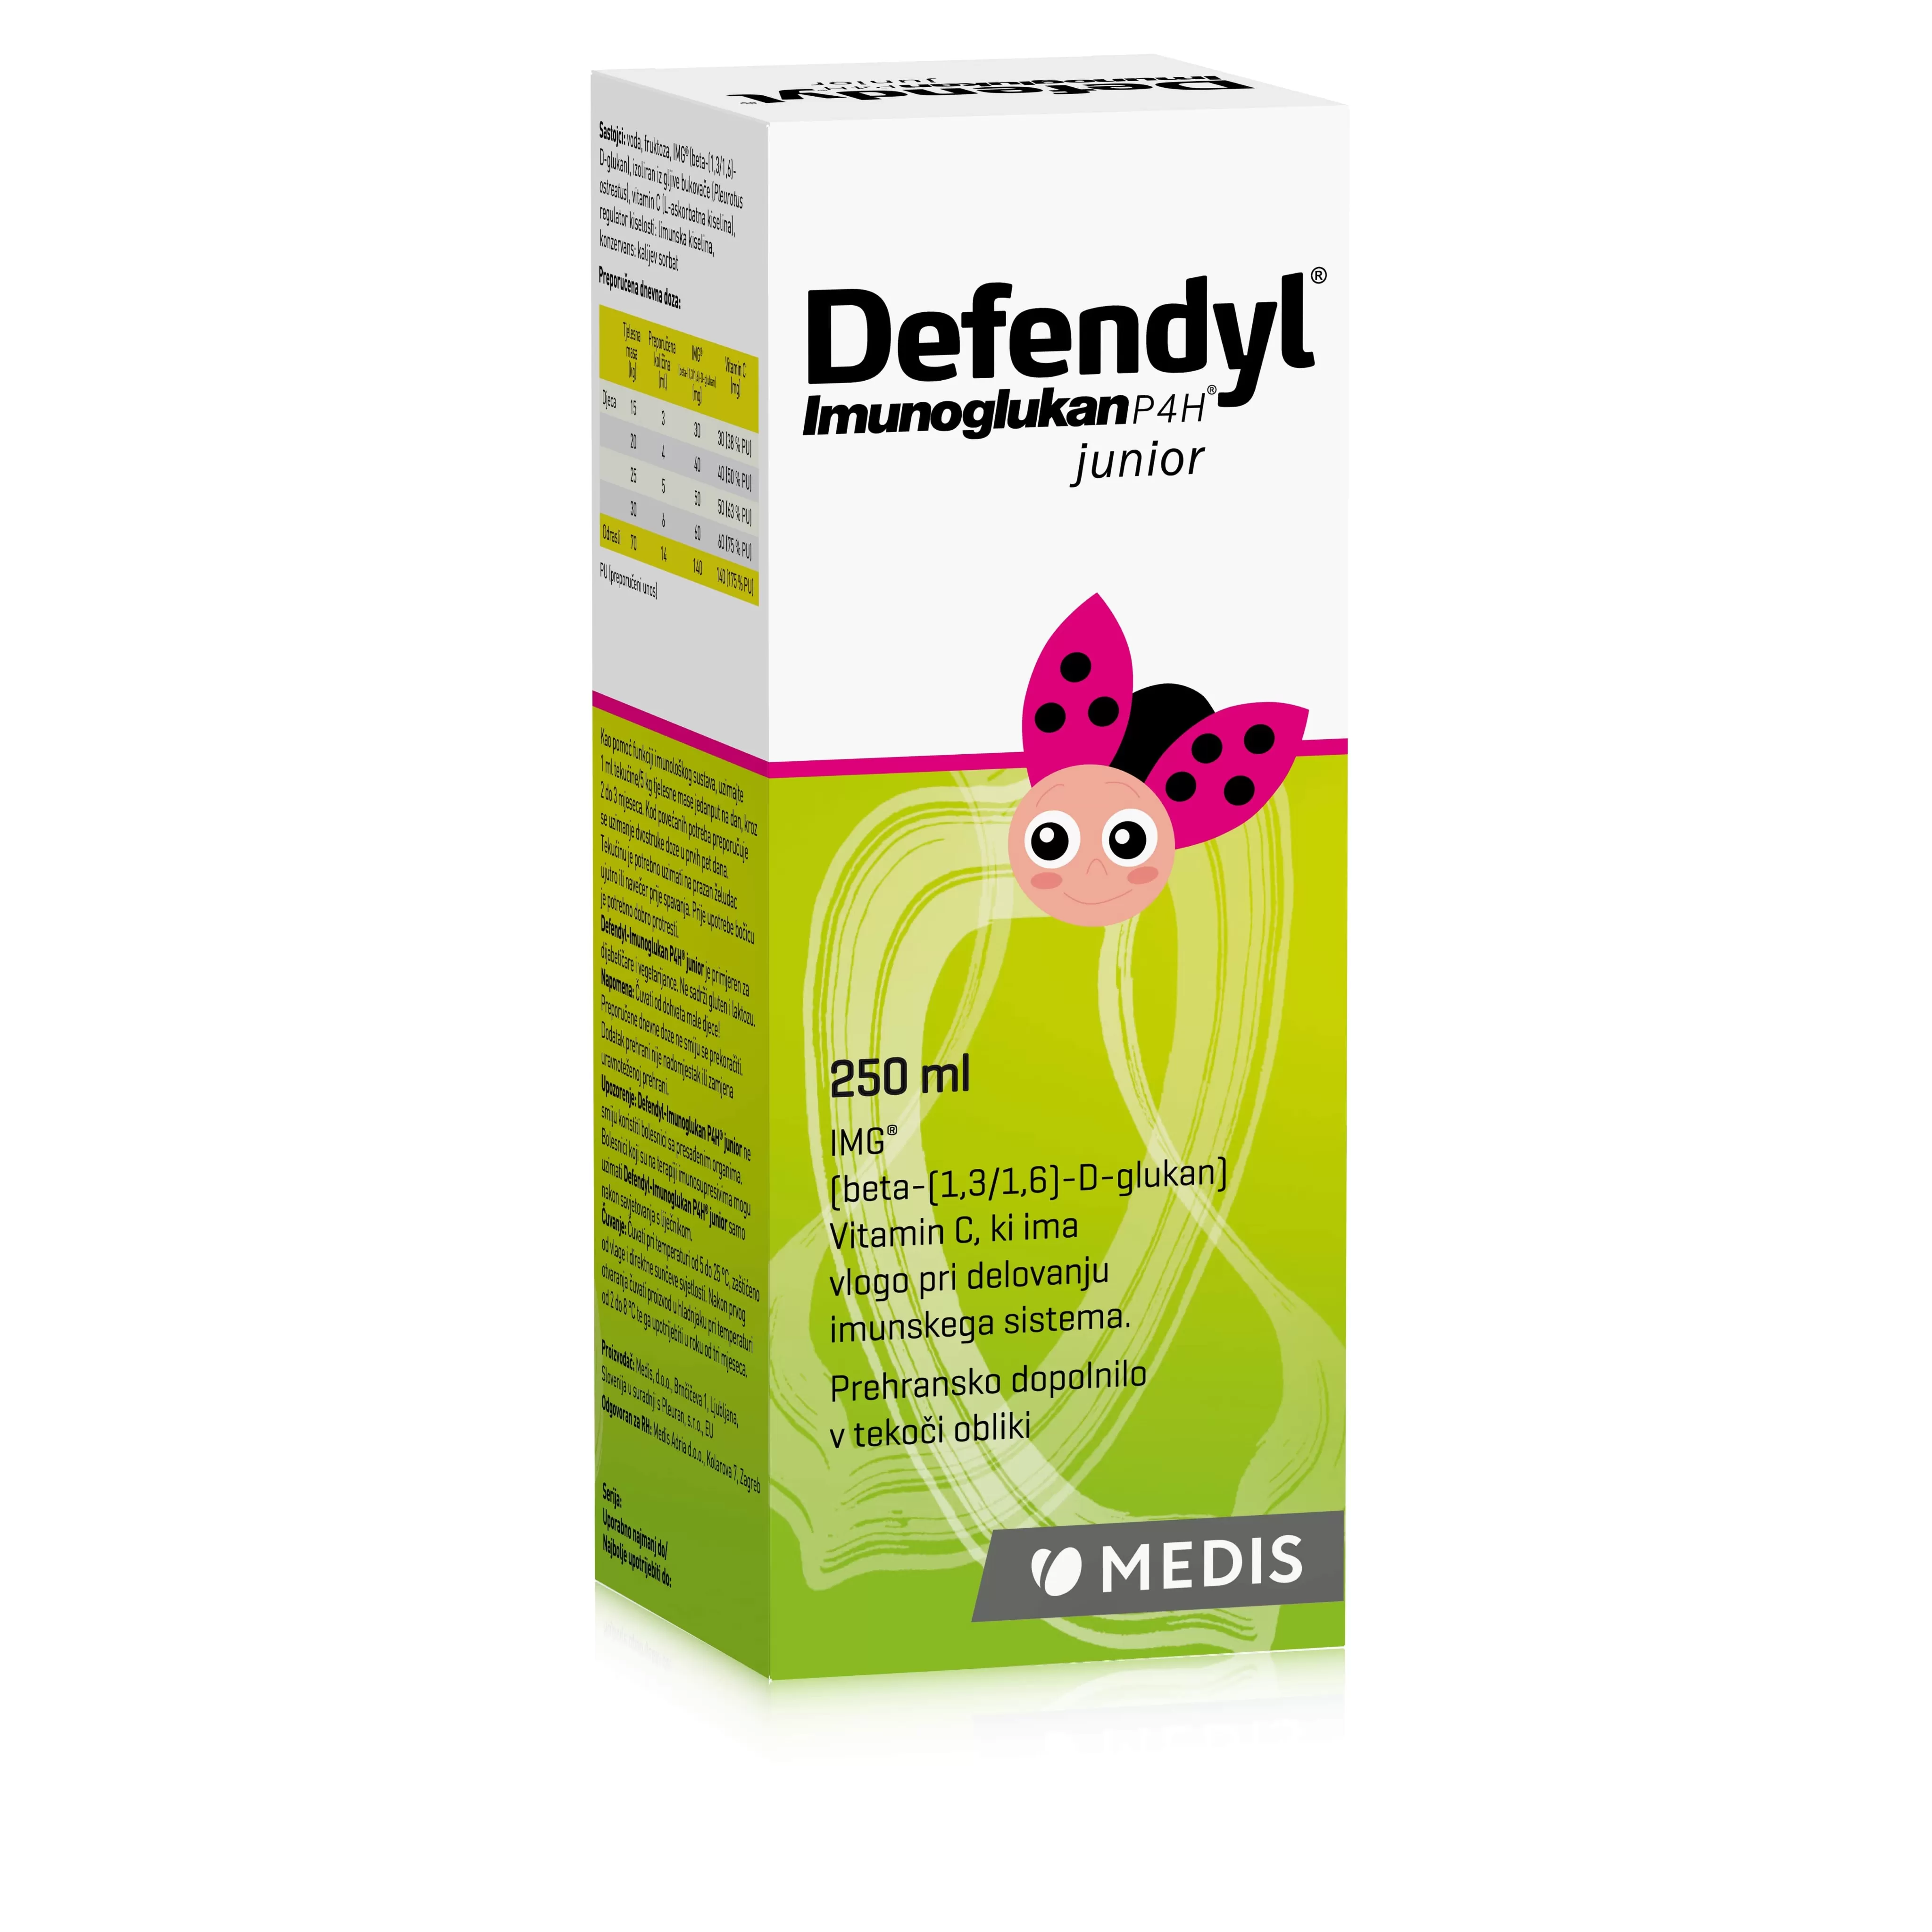 Defendyl-Imunoglukan P4H junior